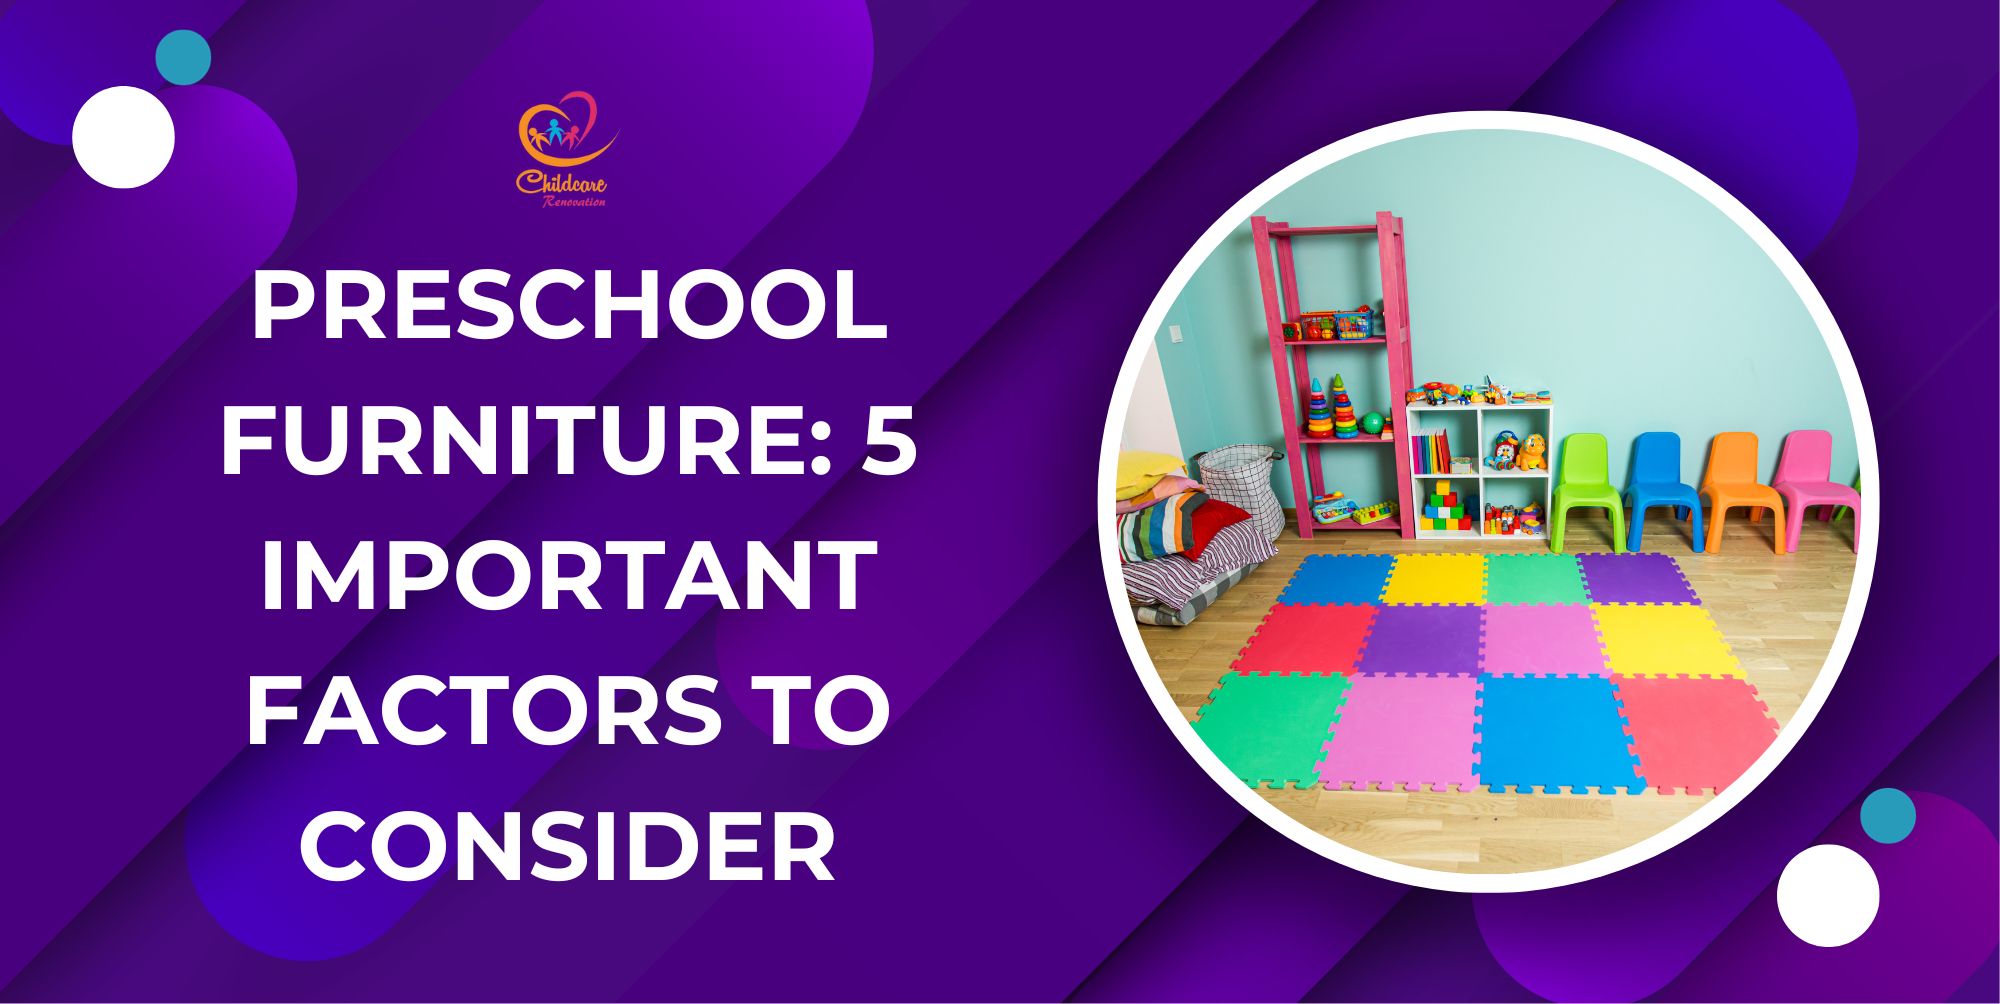 Preschool Furniture: 5 Important Factors To Consider